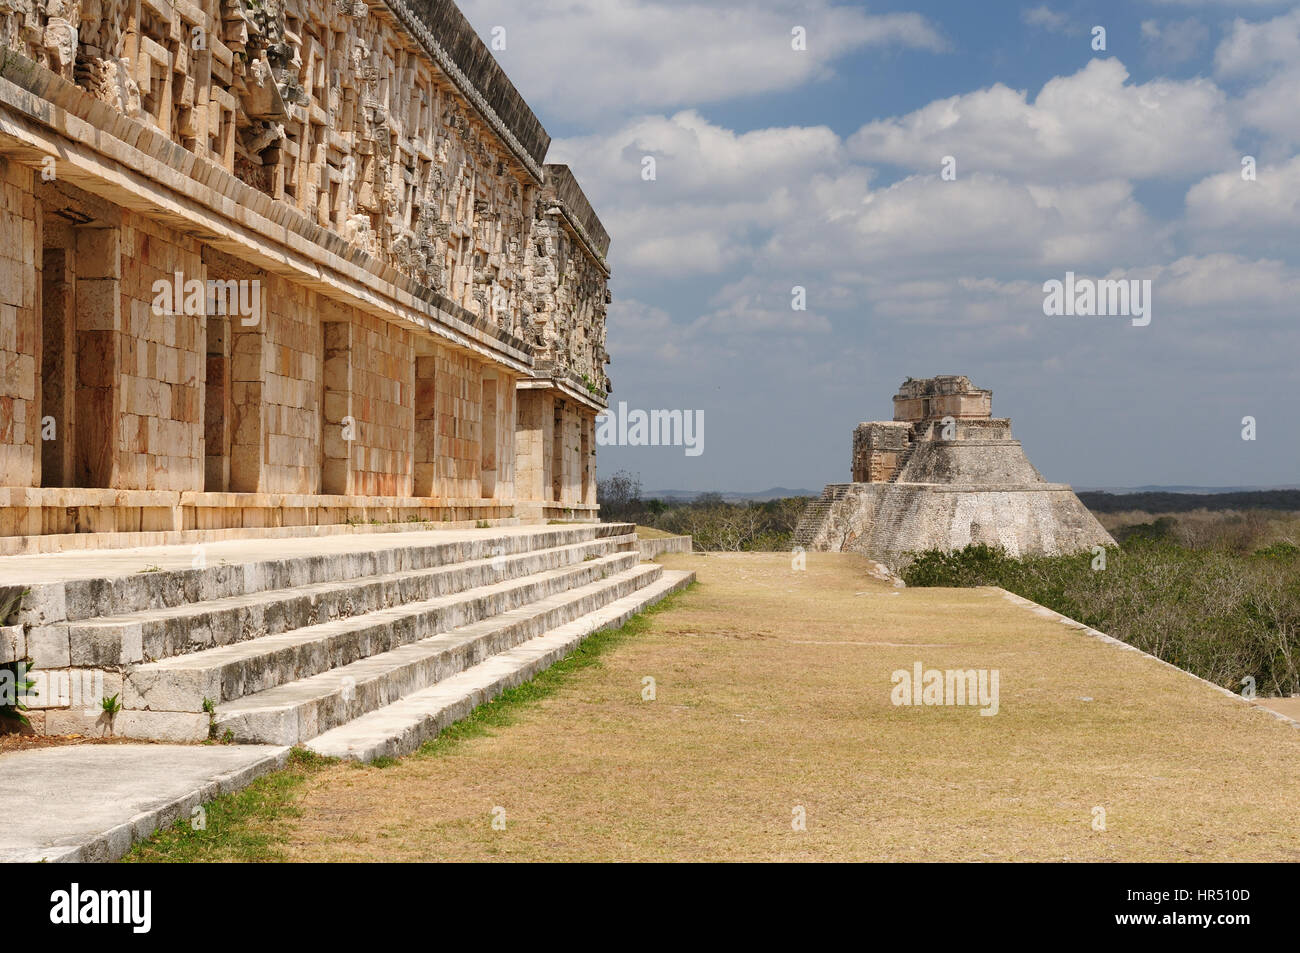 Mexiko, Uxmal Maya-Ruinen ist die archäologische Stätte von größter Relevanz in der Puuc-Route. Bekannt für die schöne Friese seine Gebäude facad Stockfoto